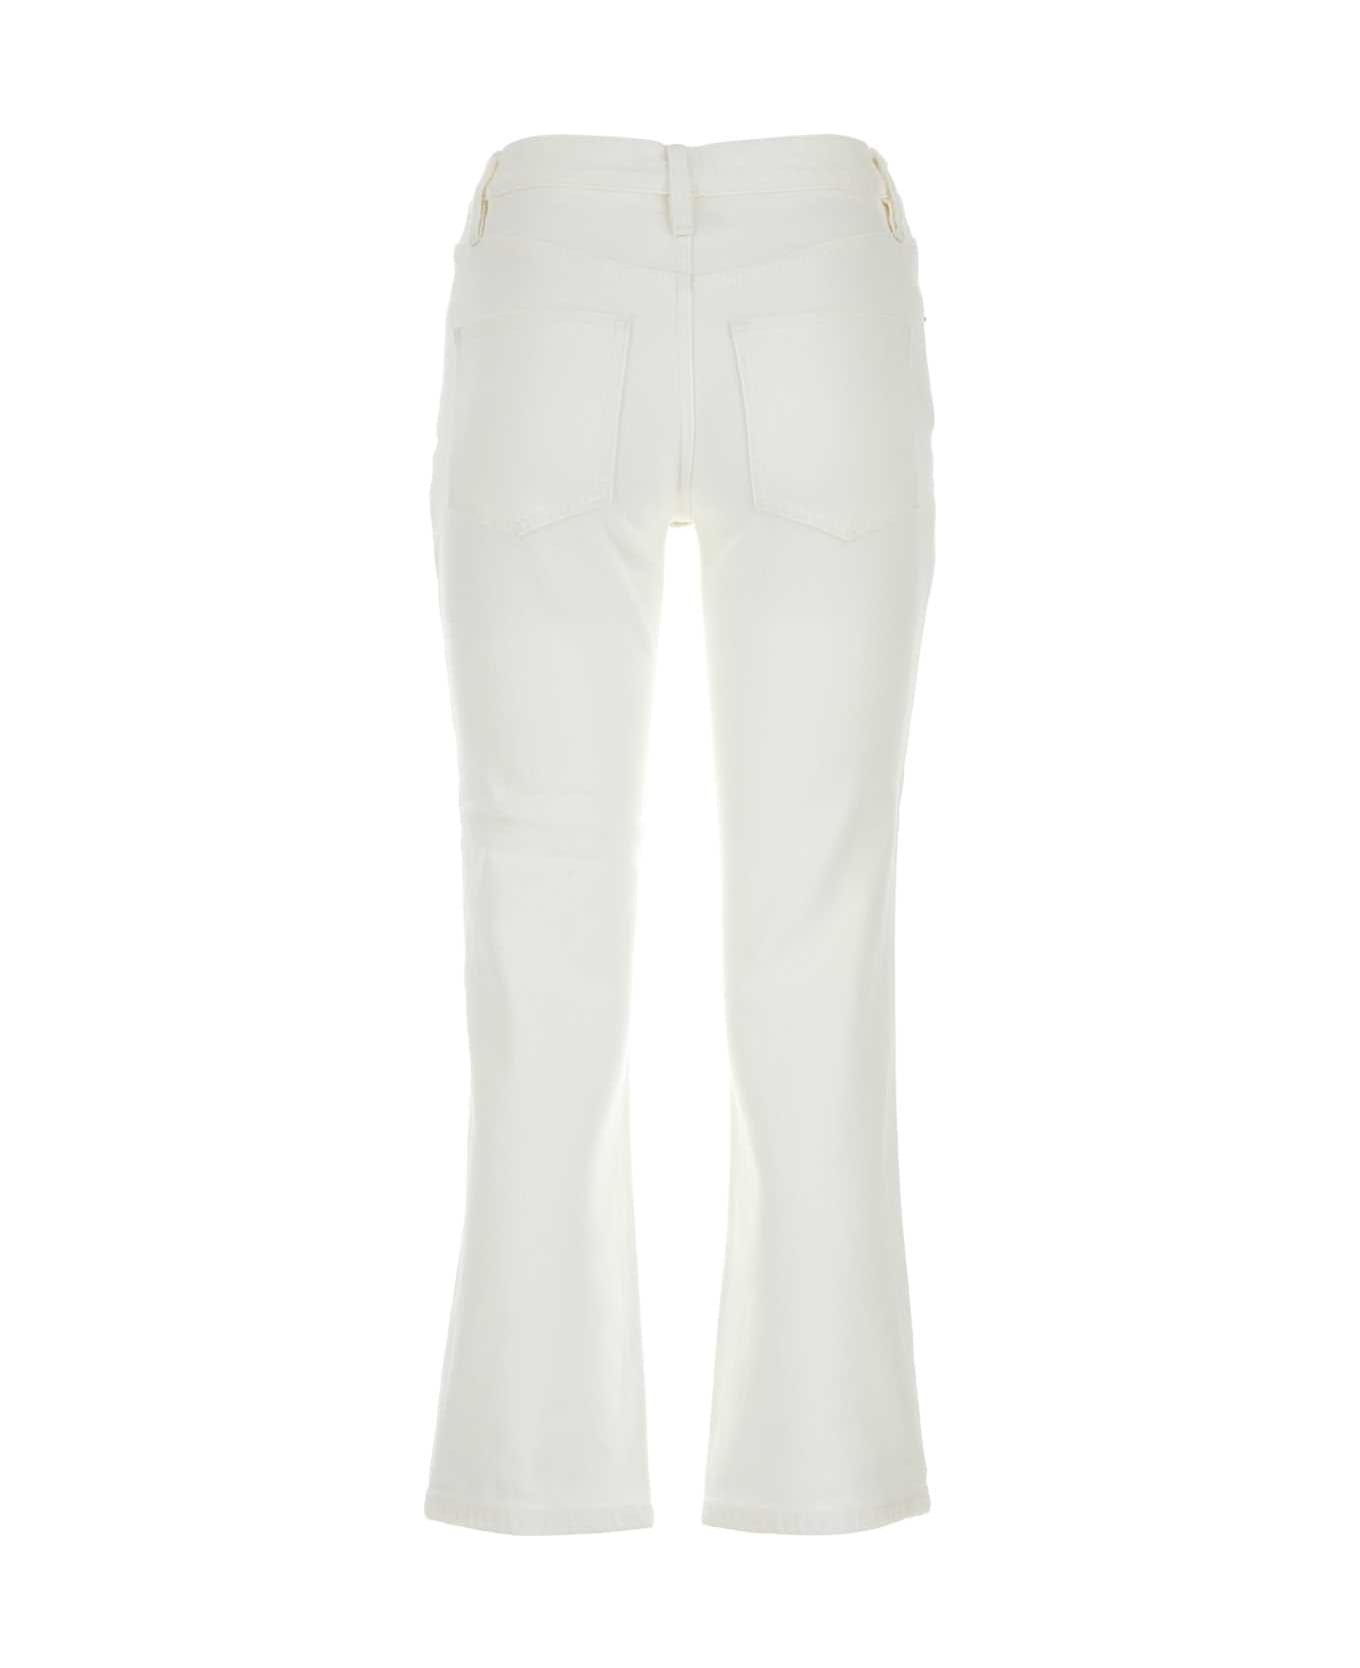 Tory Burch White Stretch Denim Jeans - WHITECHALKWAS